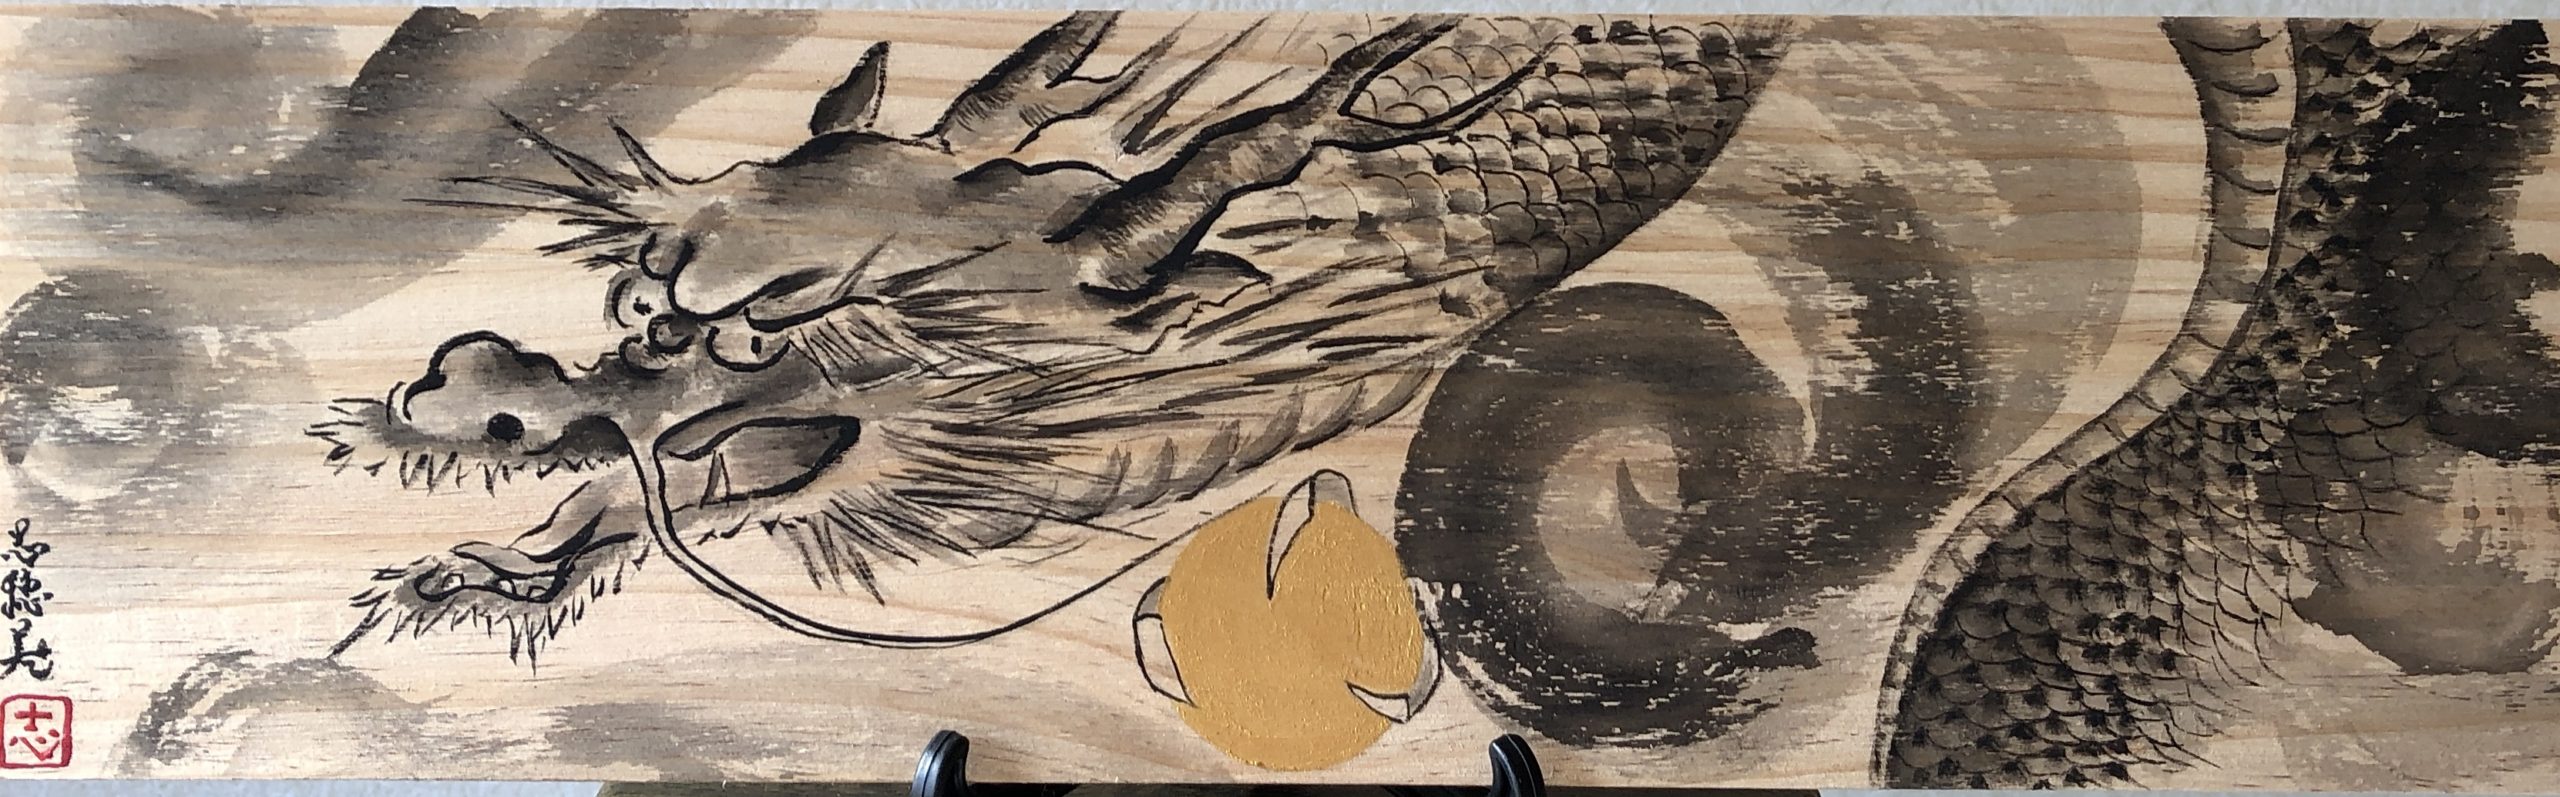 RYUJIN Dragon Suibokuga painting board art | Connect Japan and the ...